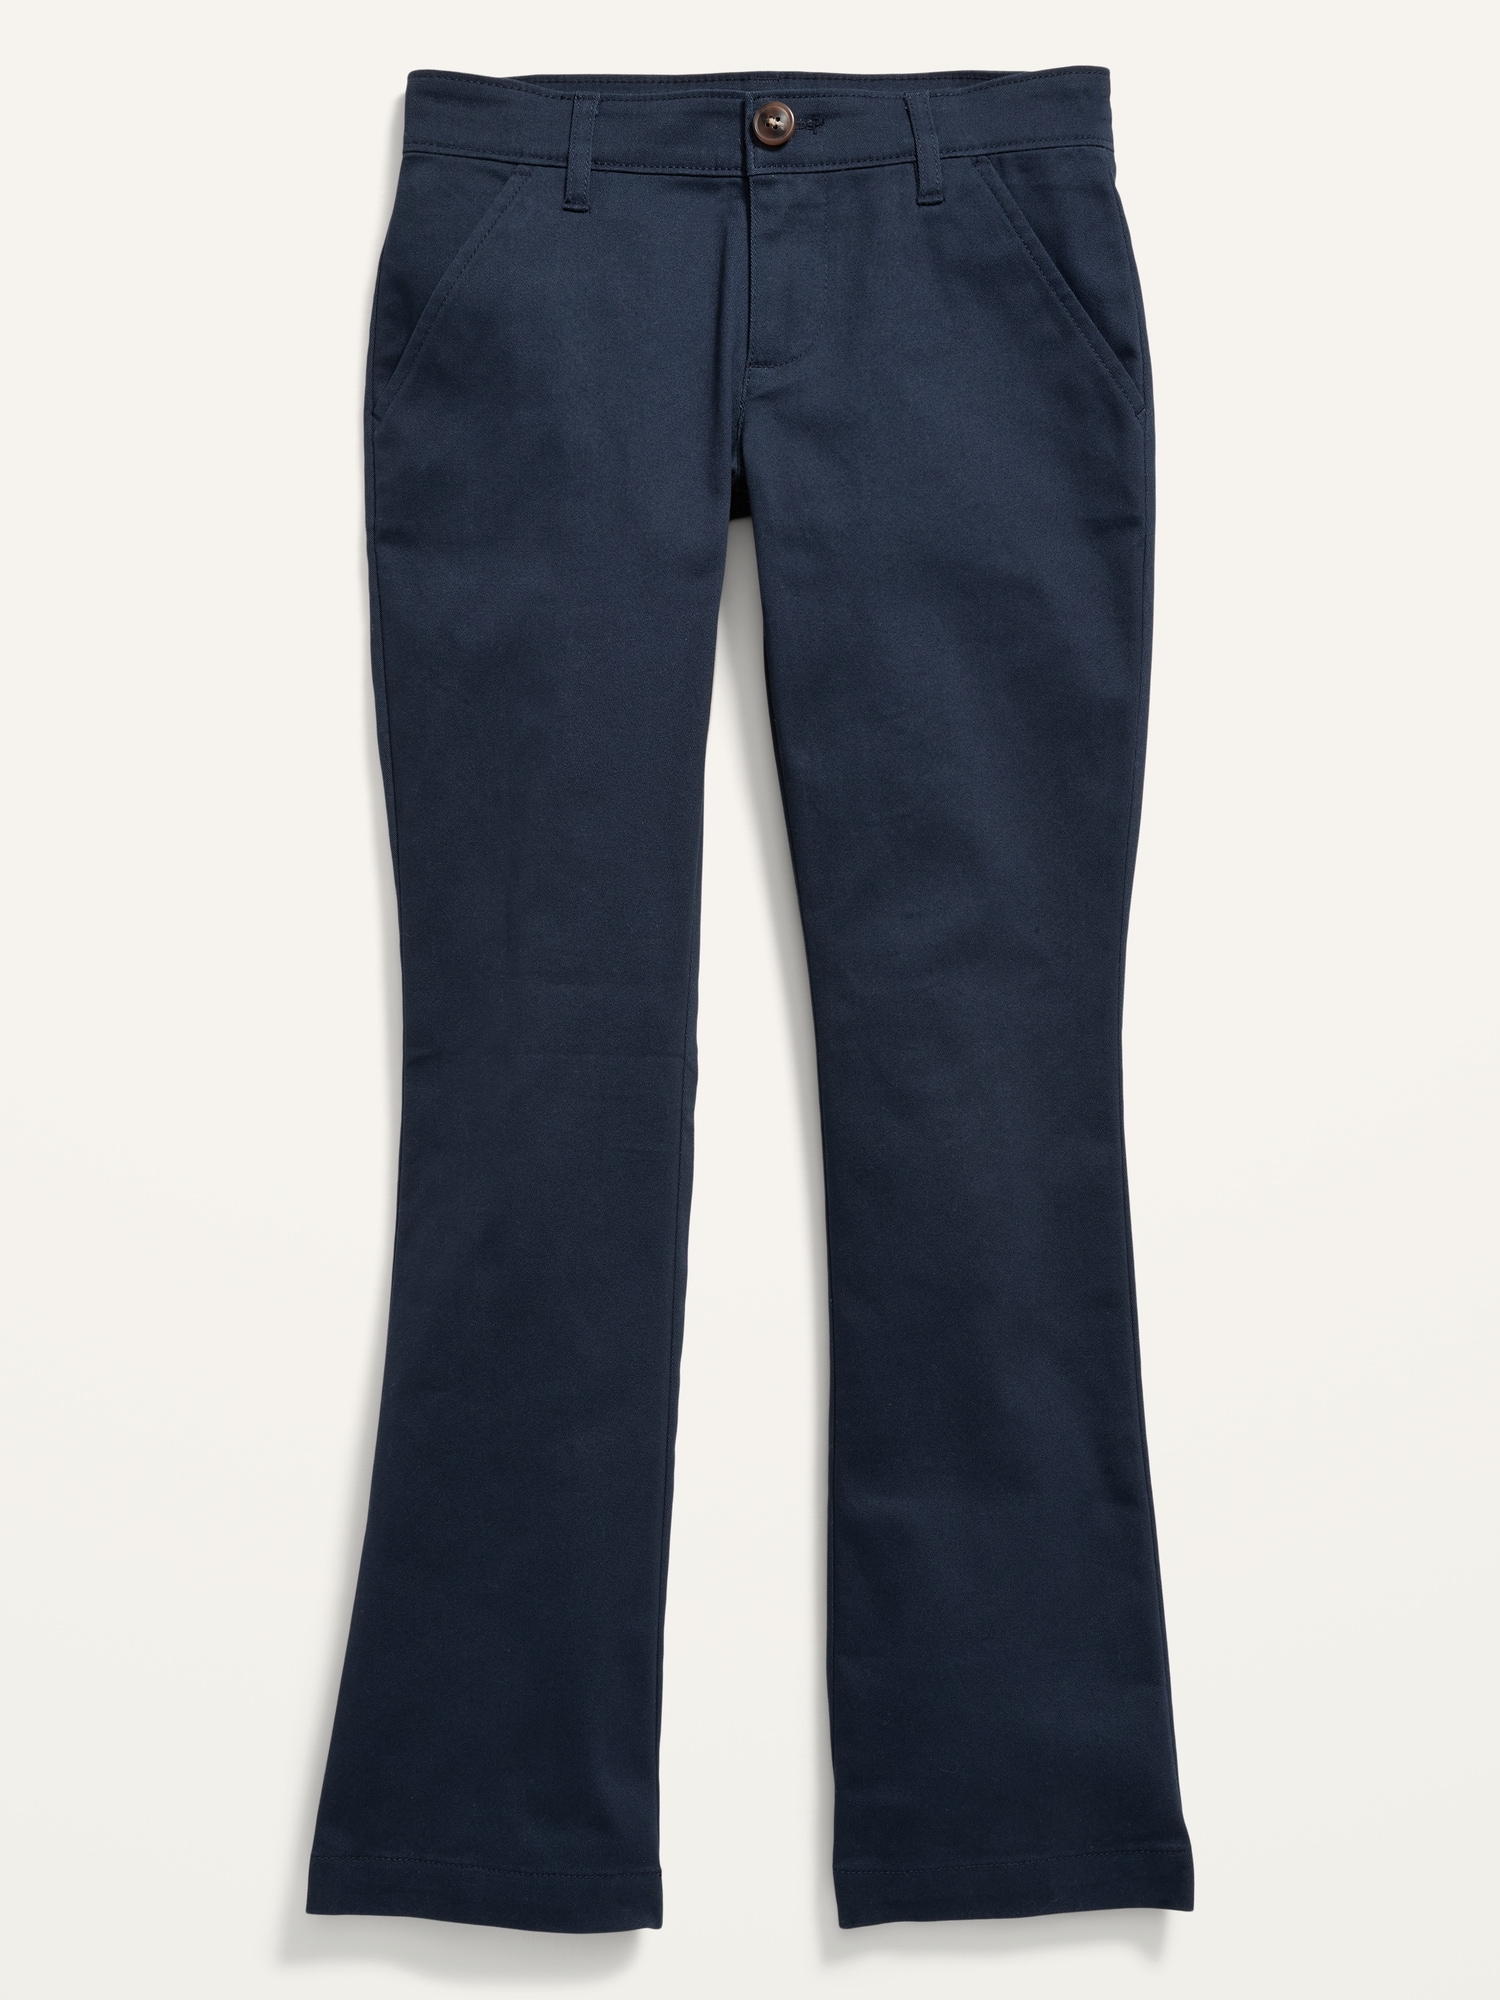 Old Navy Pants 12 Girls Stretch Slim Skinny Chino Khaki Dress Uniform  Rolled Oat | eBay